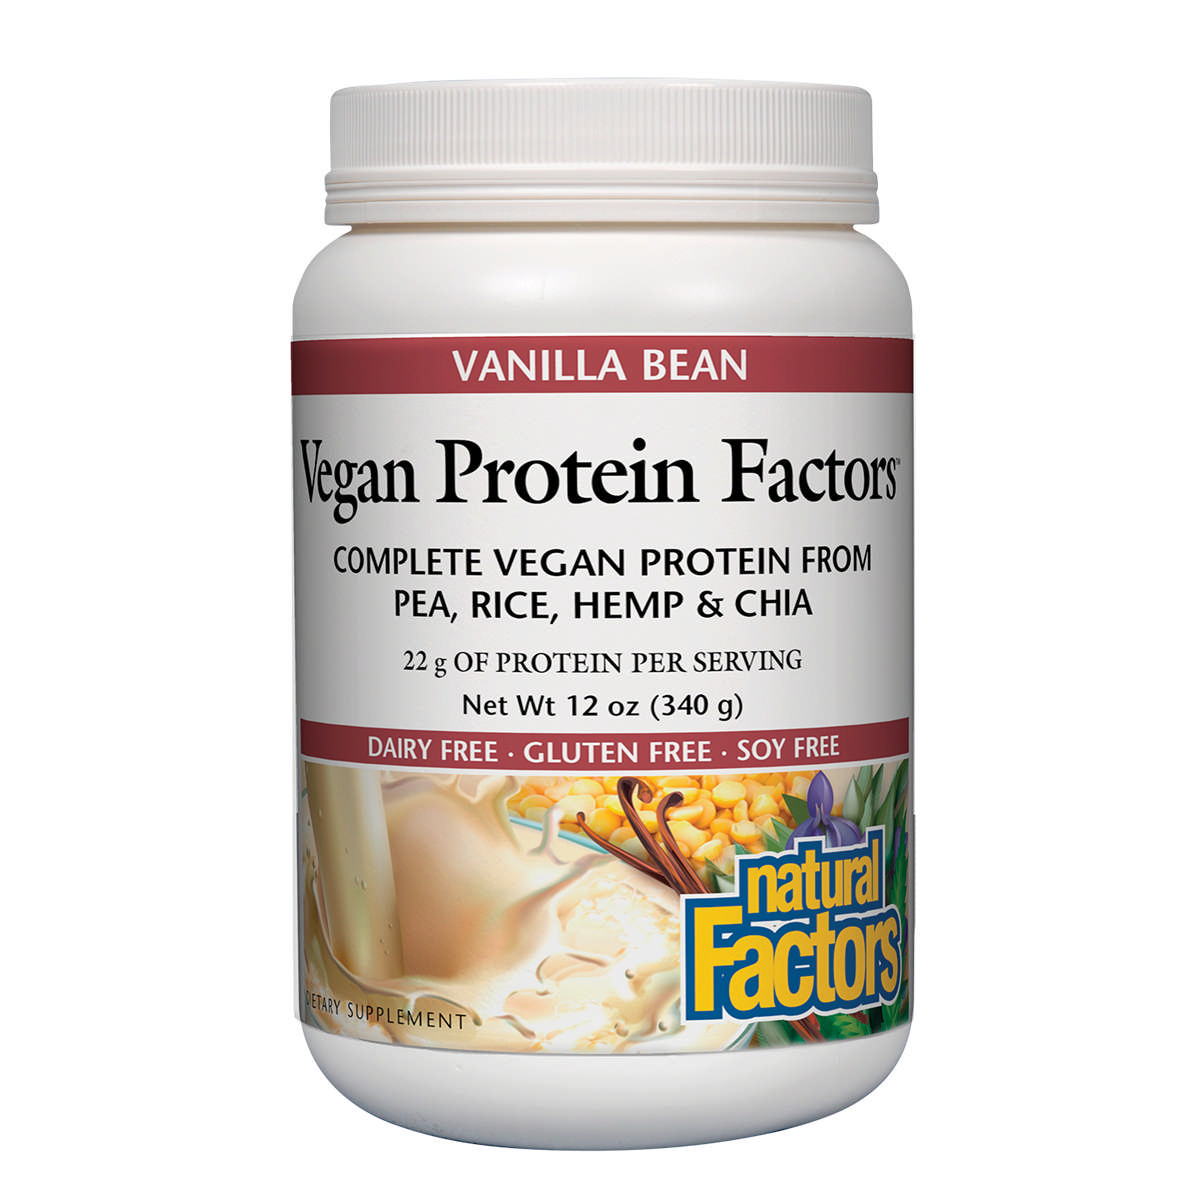 Natural Factors - Vegan Protein Factors Vanilla